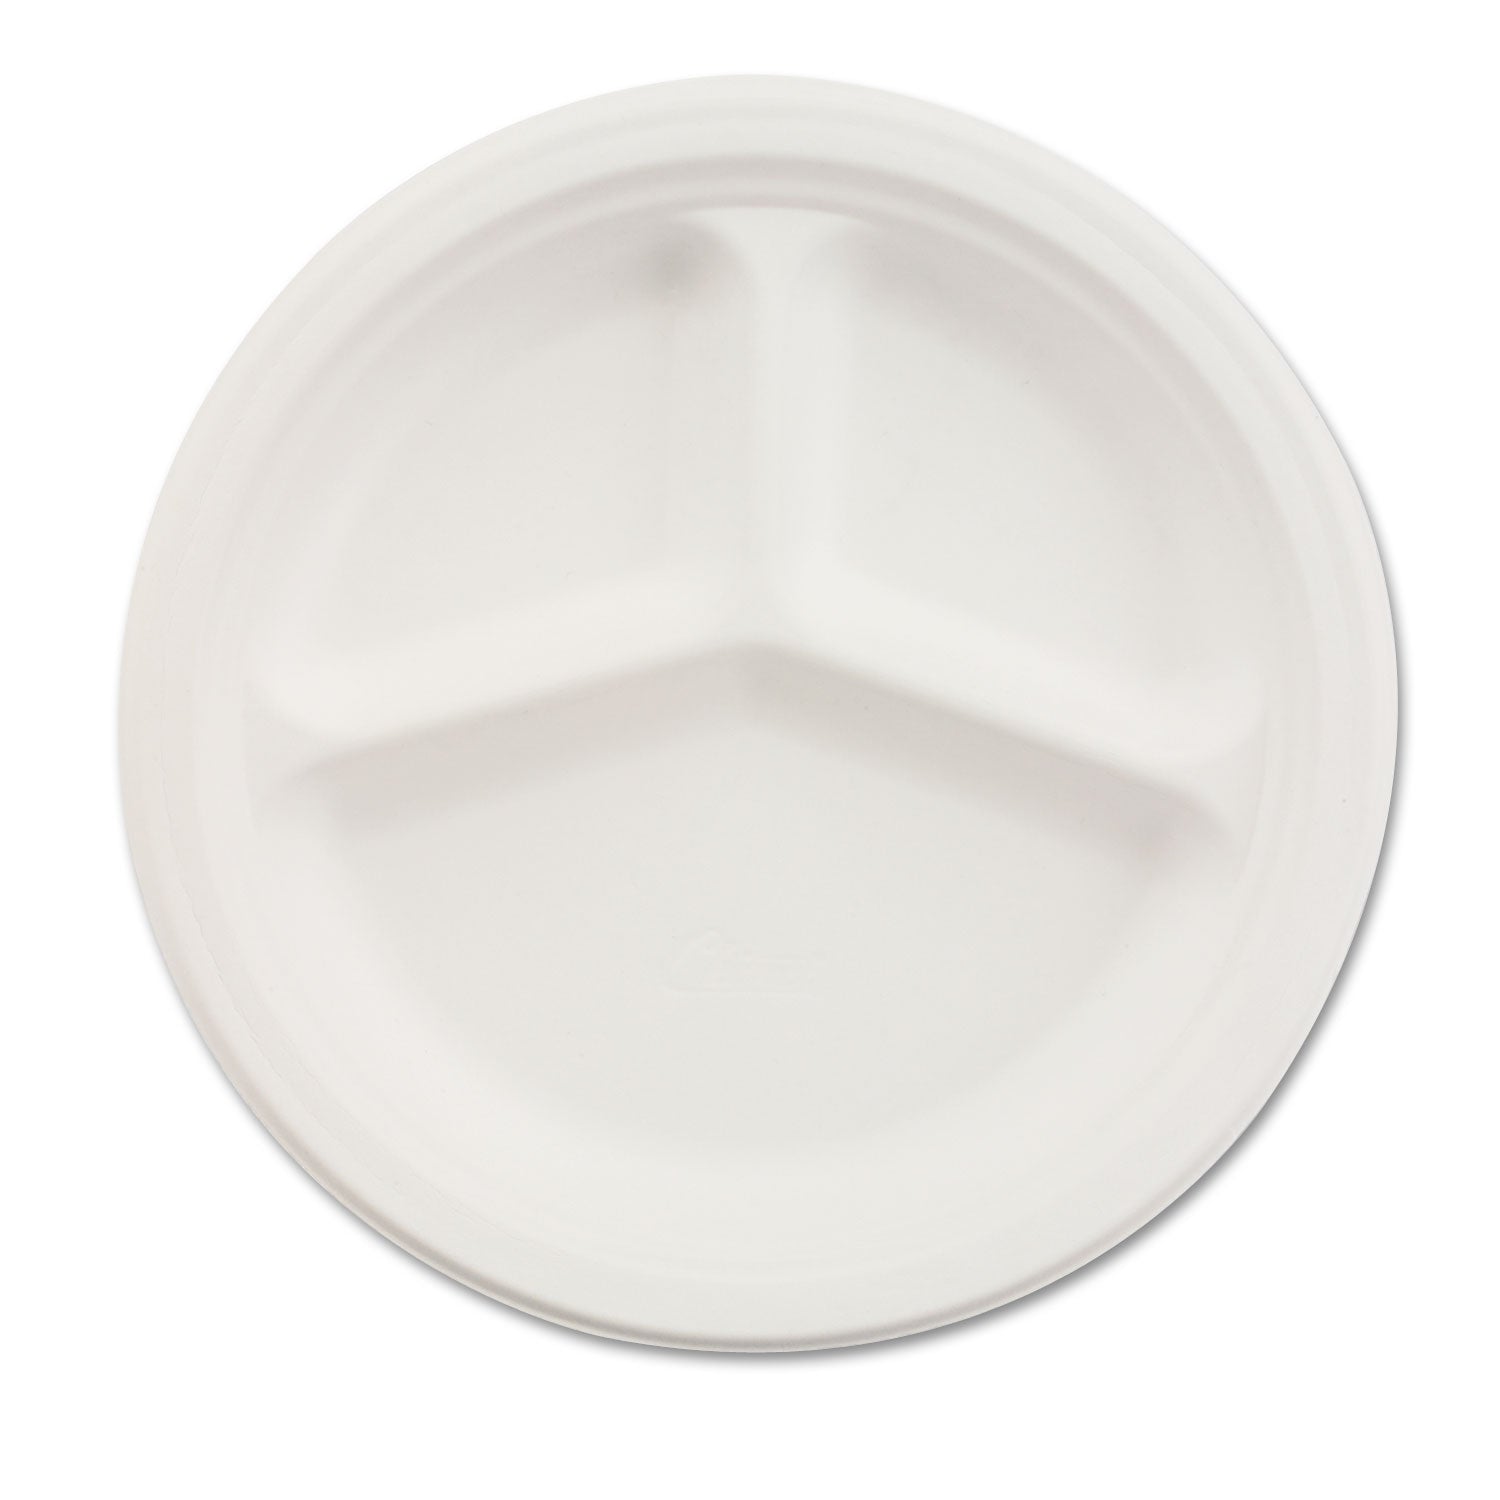 Paper Dinnerware, 3-Compartment Plate, 9.25" dia, White, 500/Carton - 